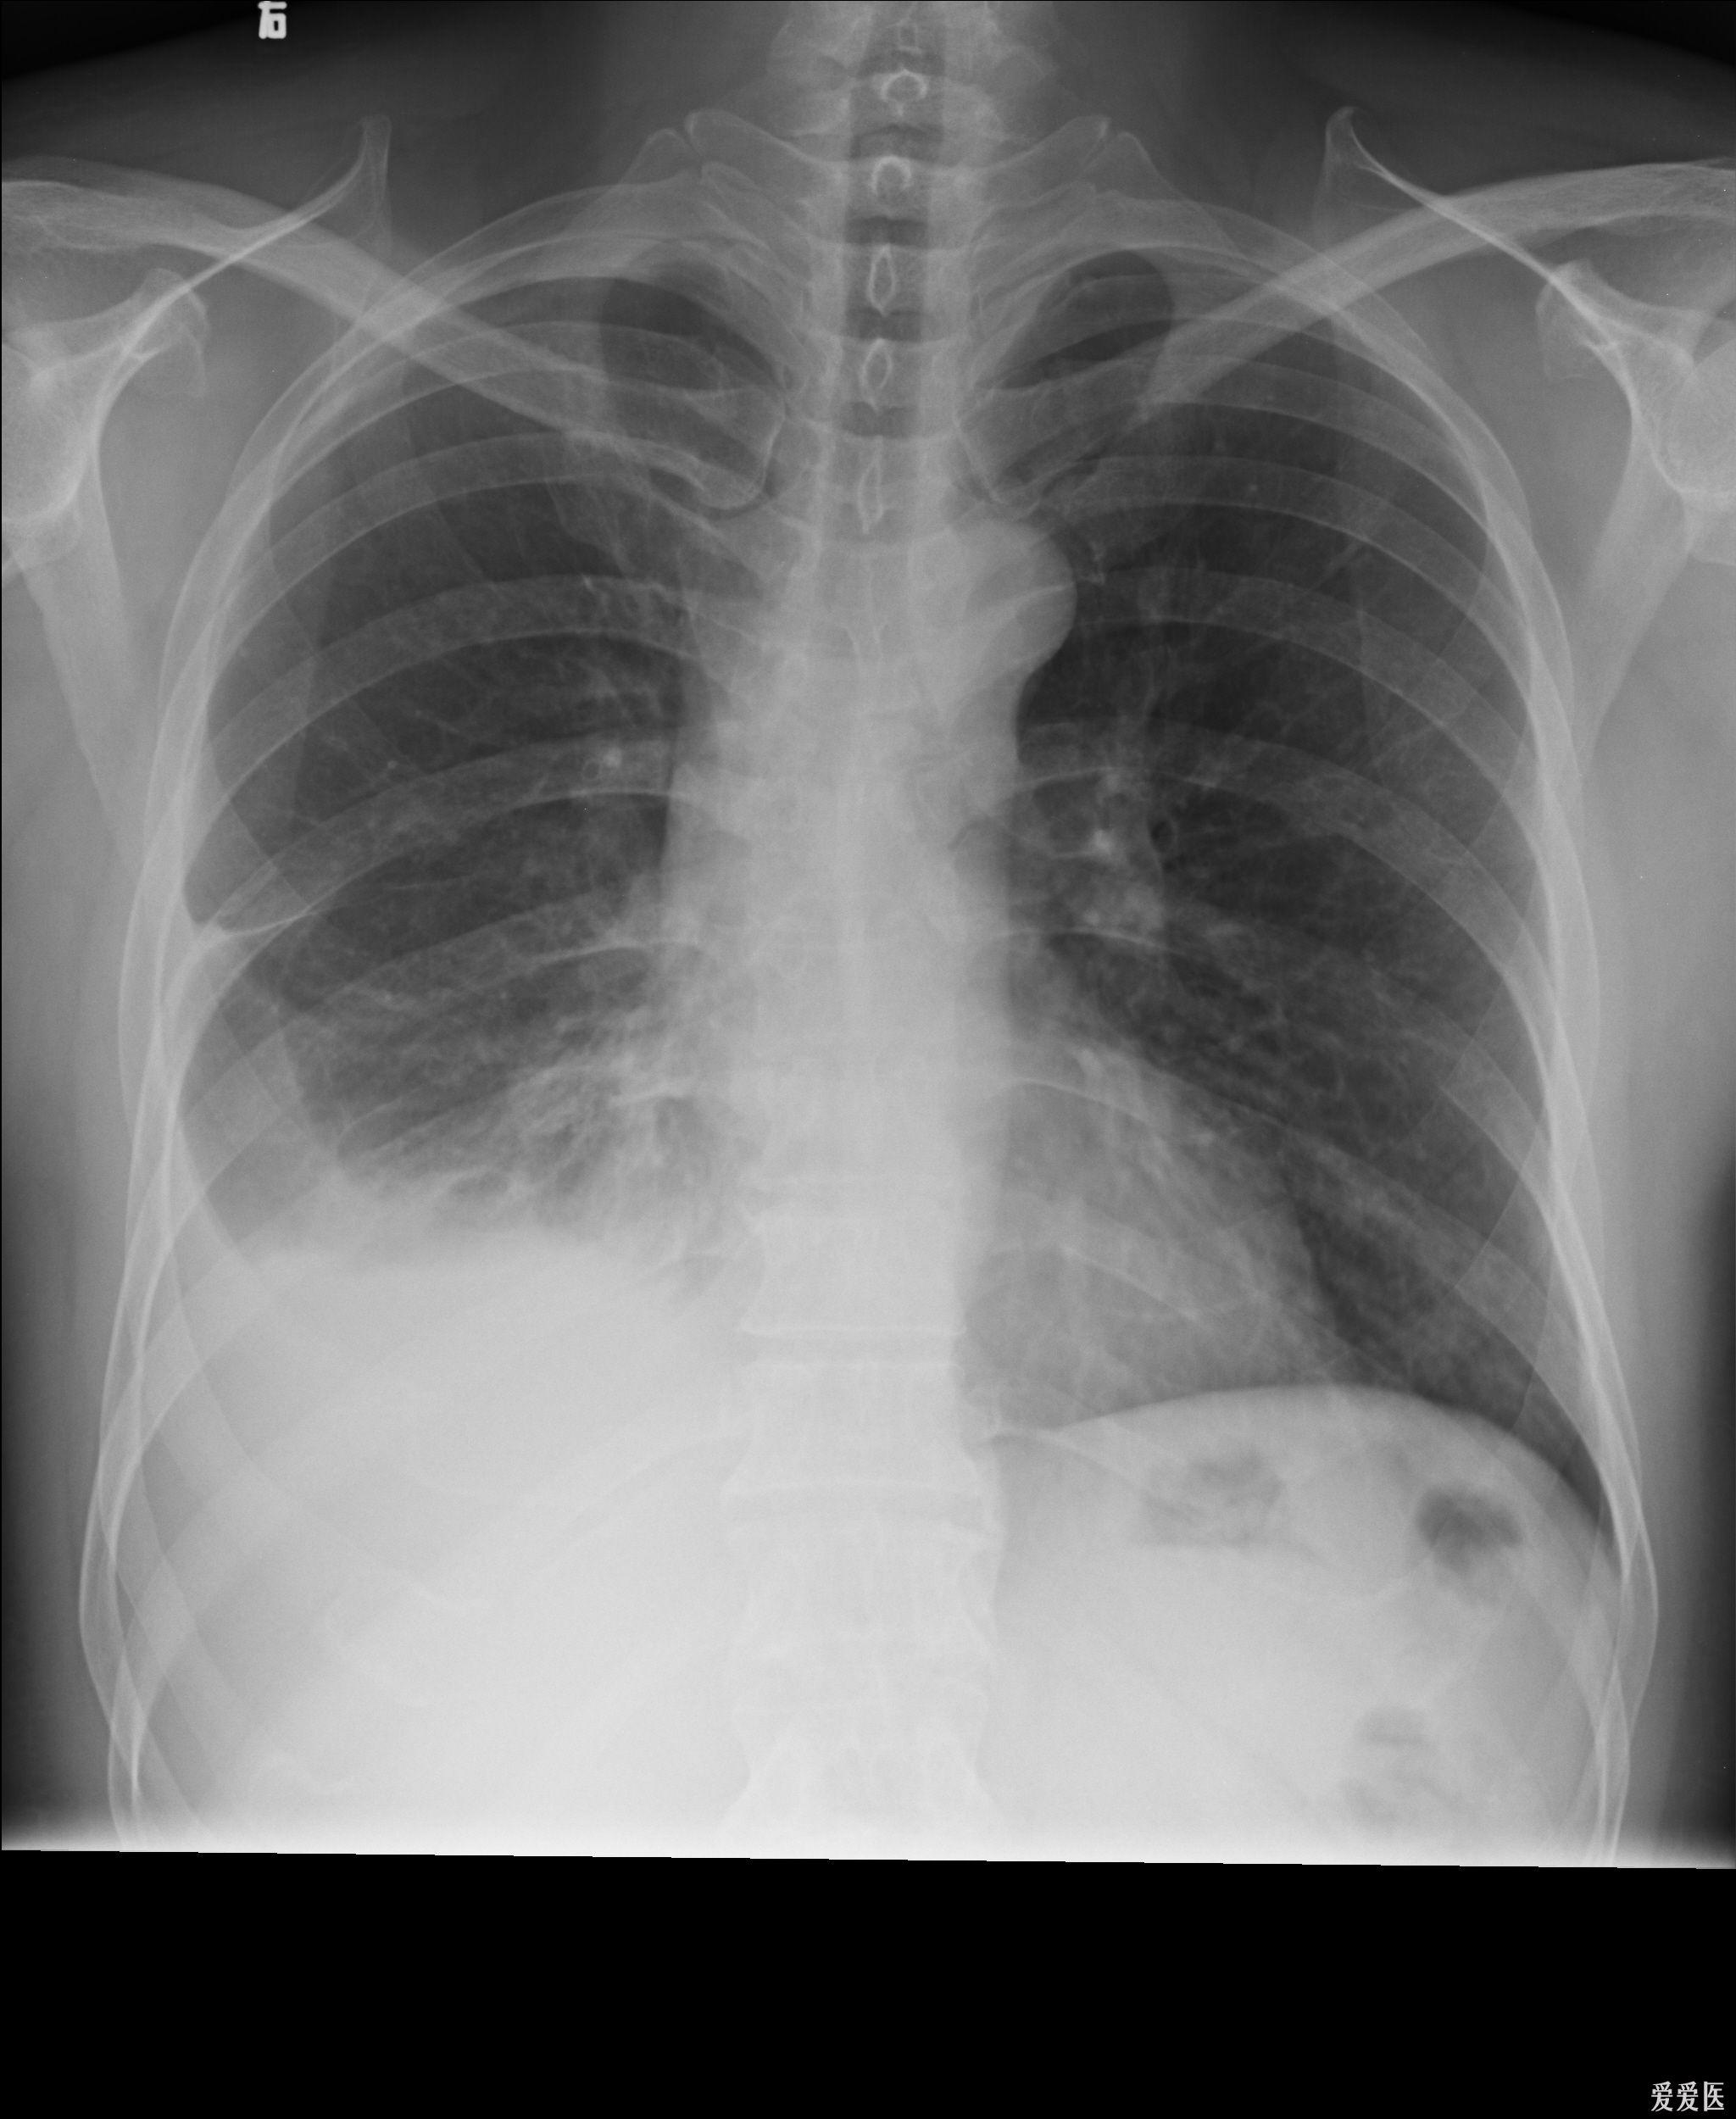 胸片:肺大疱 or 局限性肺气肿?